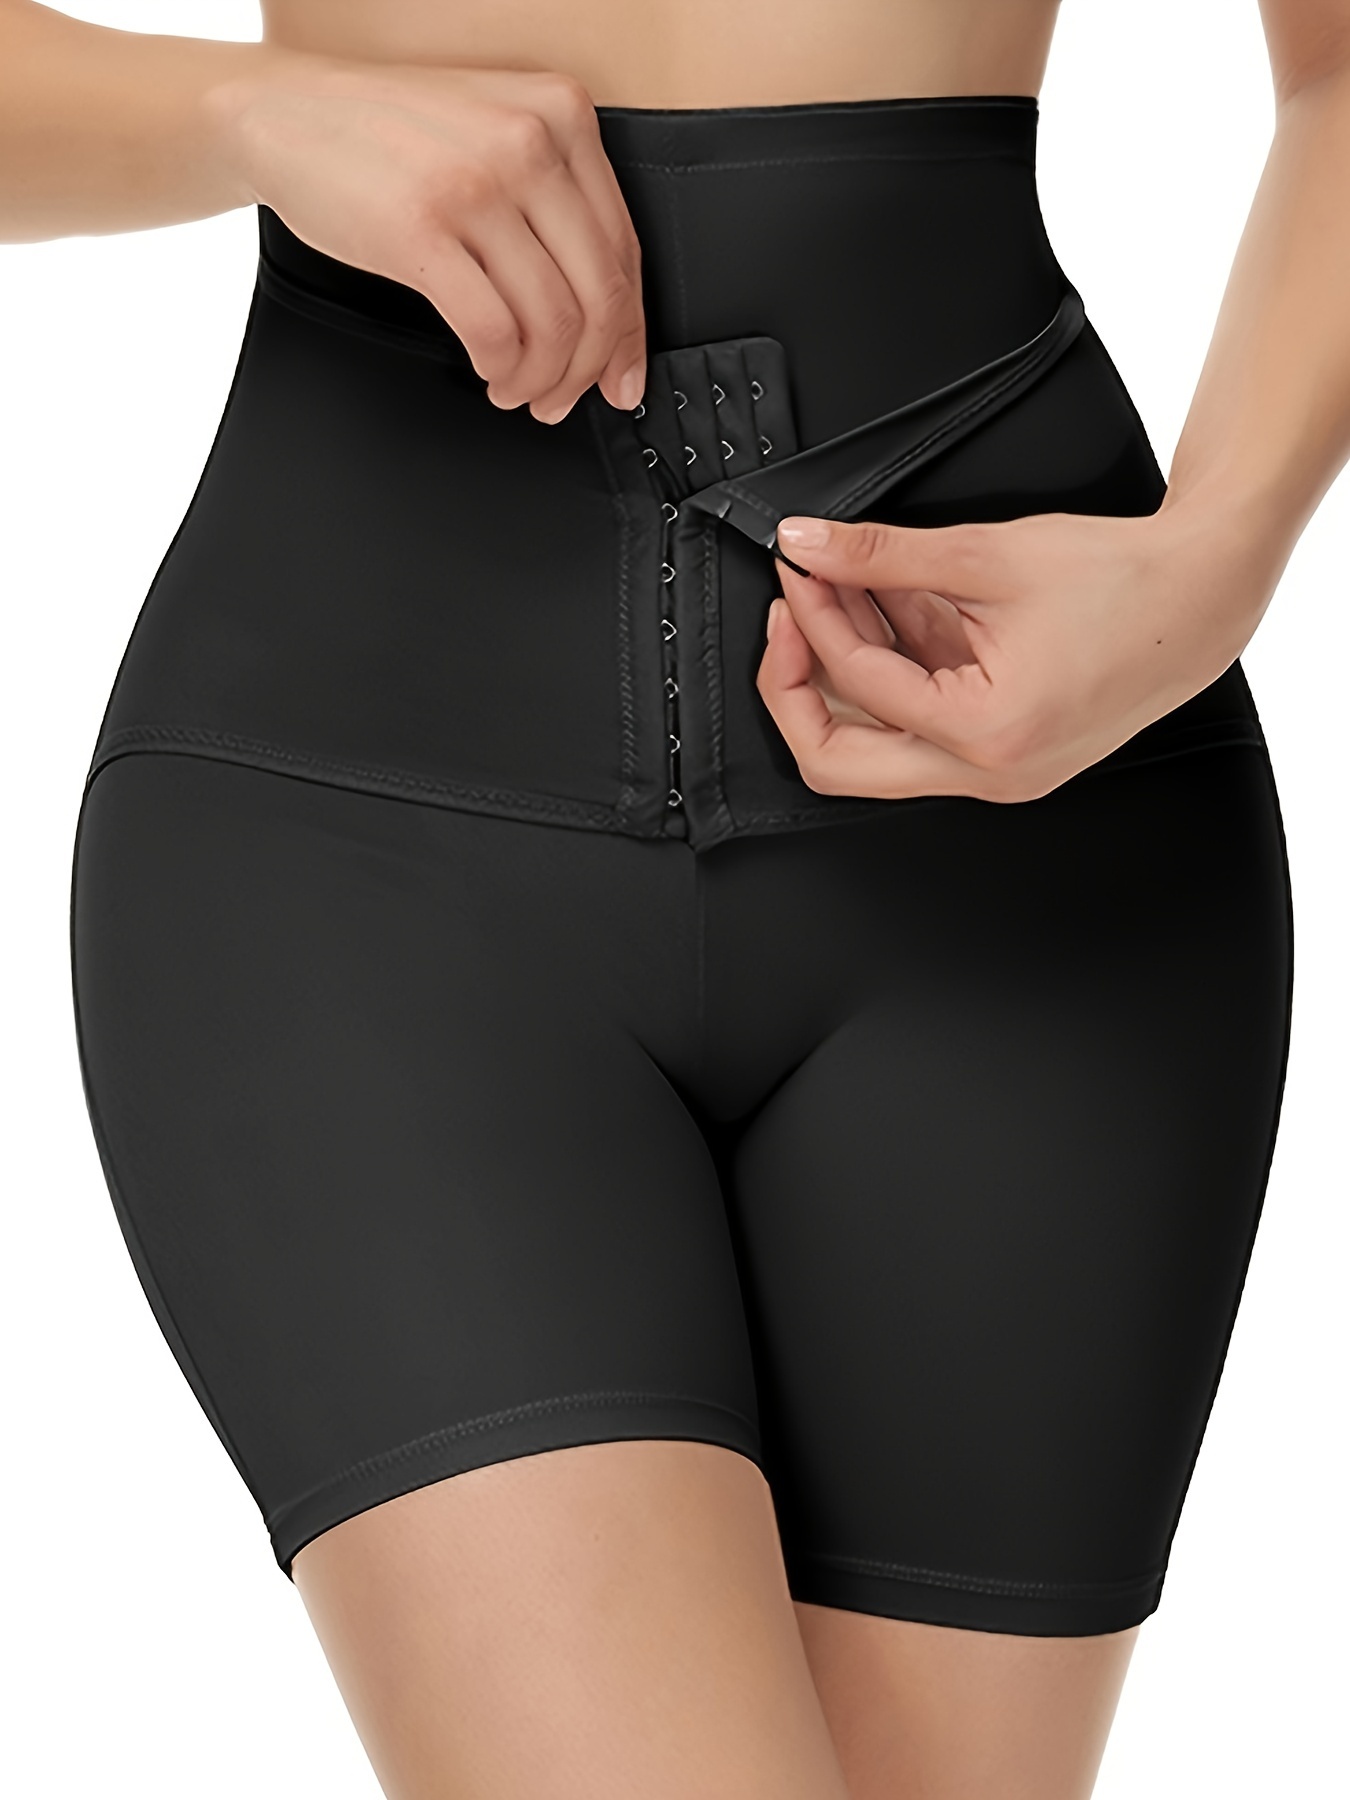 Postpartum Girdle High Waist Control Panties For Women Butt Lifter